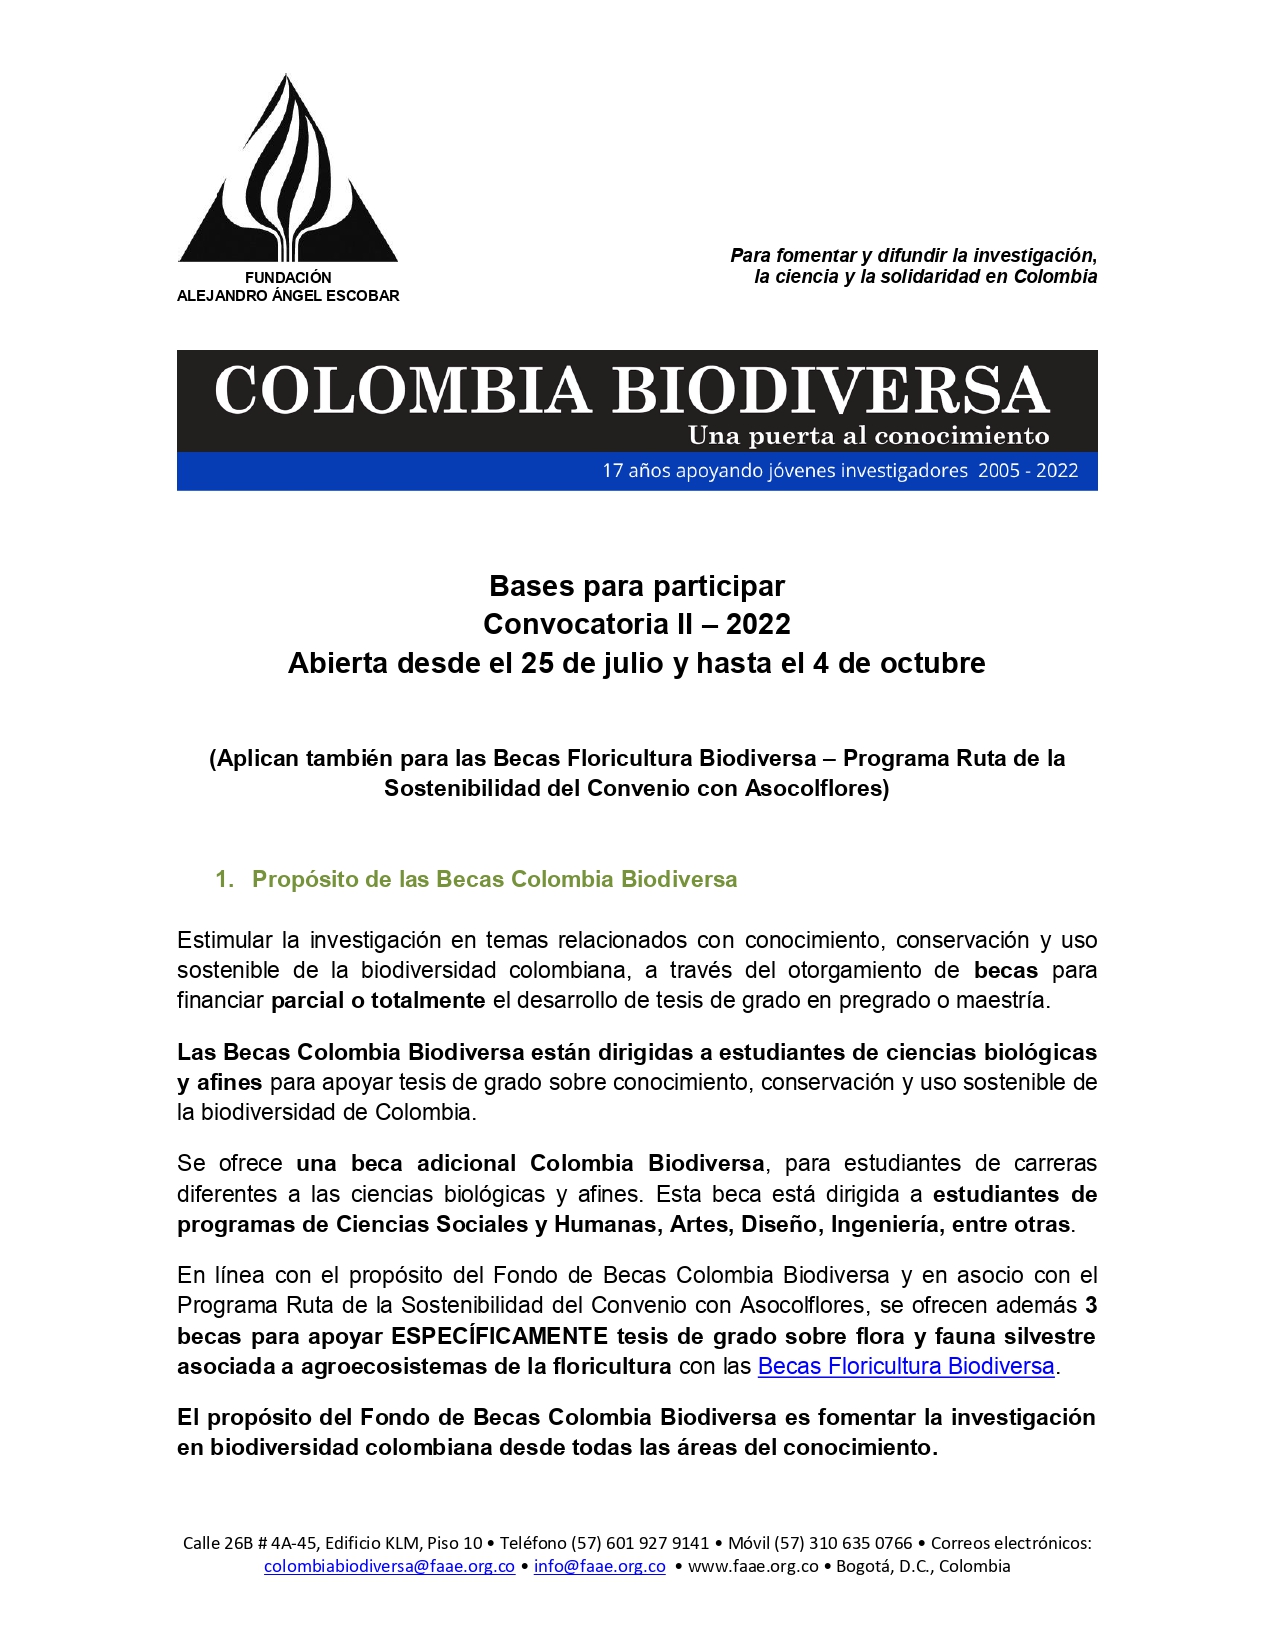 UDENAR-PERIODICO-Colombia-biodiversa